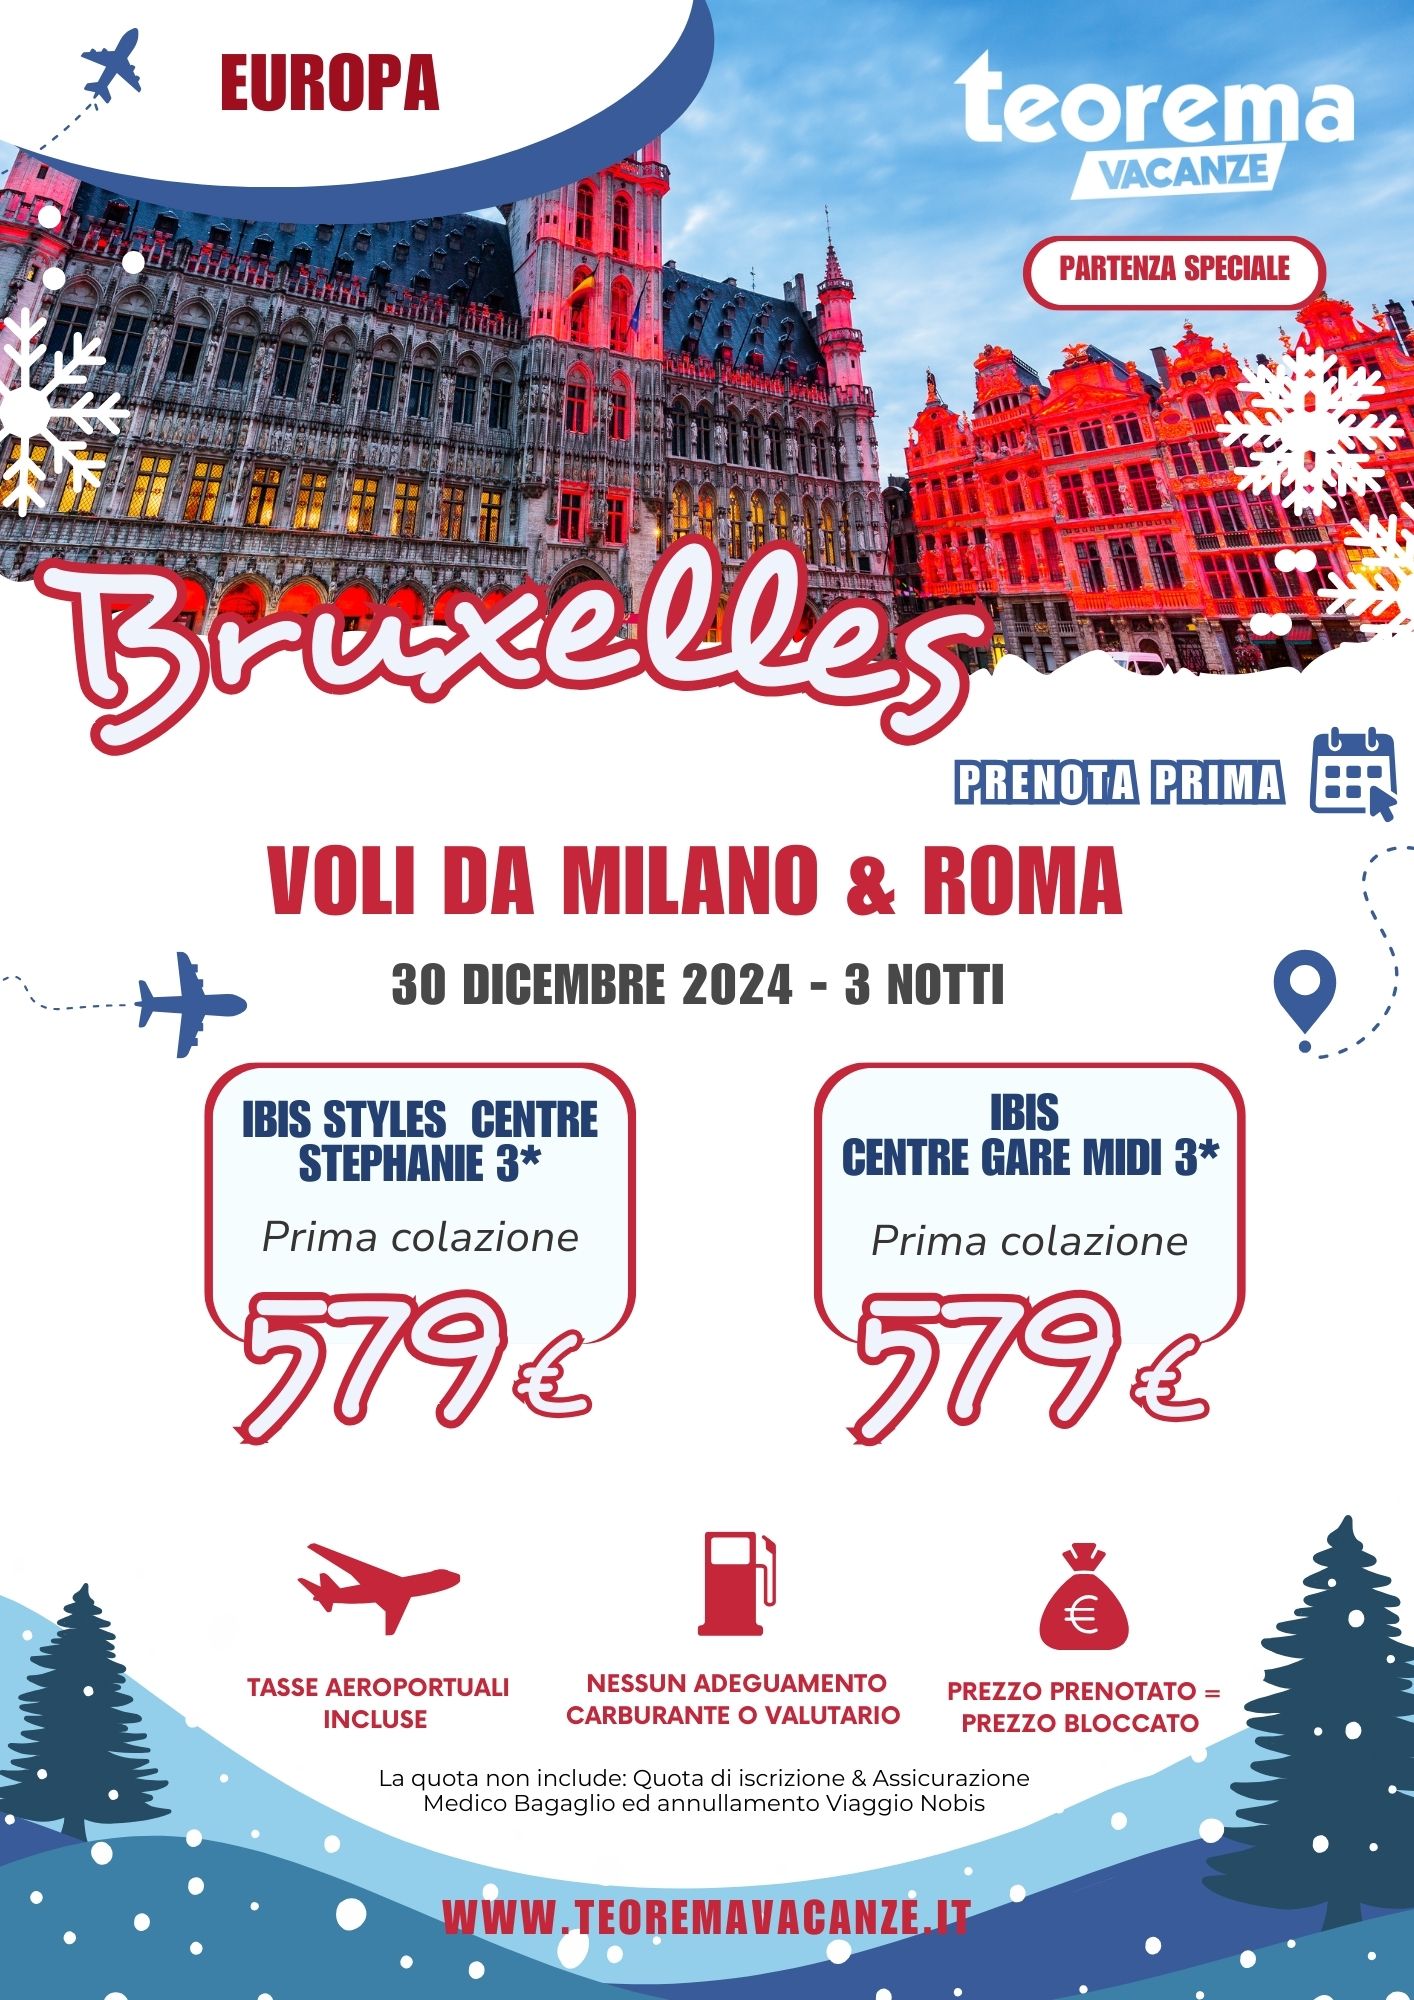 TEOREMA WINTER 2025 -  BRUXELLES DA MILANO & ROMA